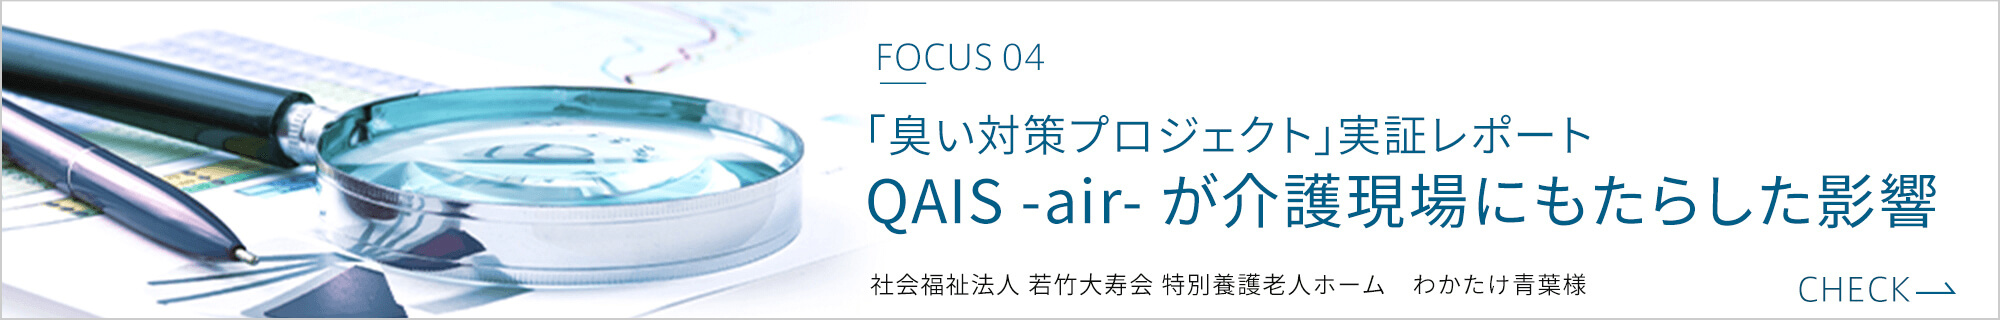 「臭い対策プロジェクト」実証レポート QAIS -air- が介護現場にもたらした影響